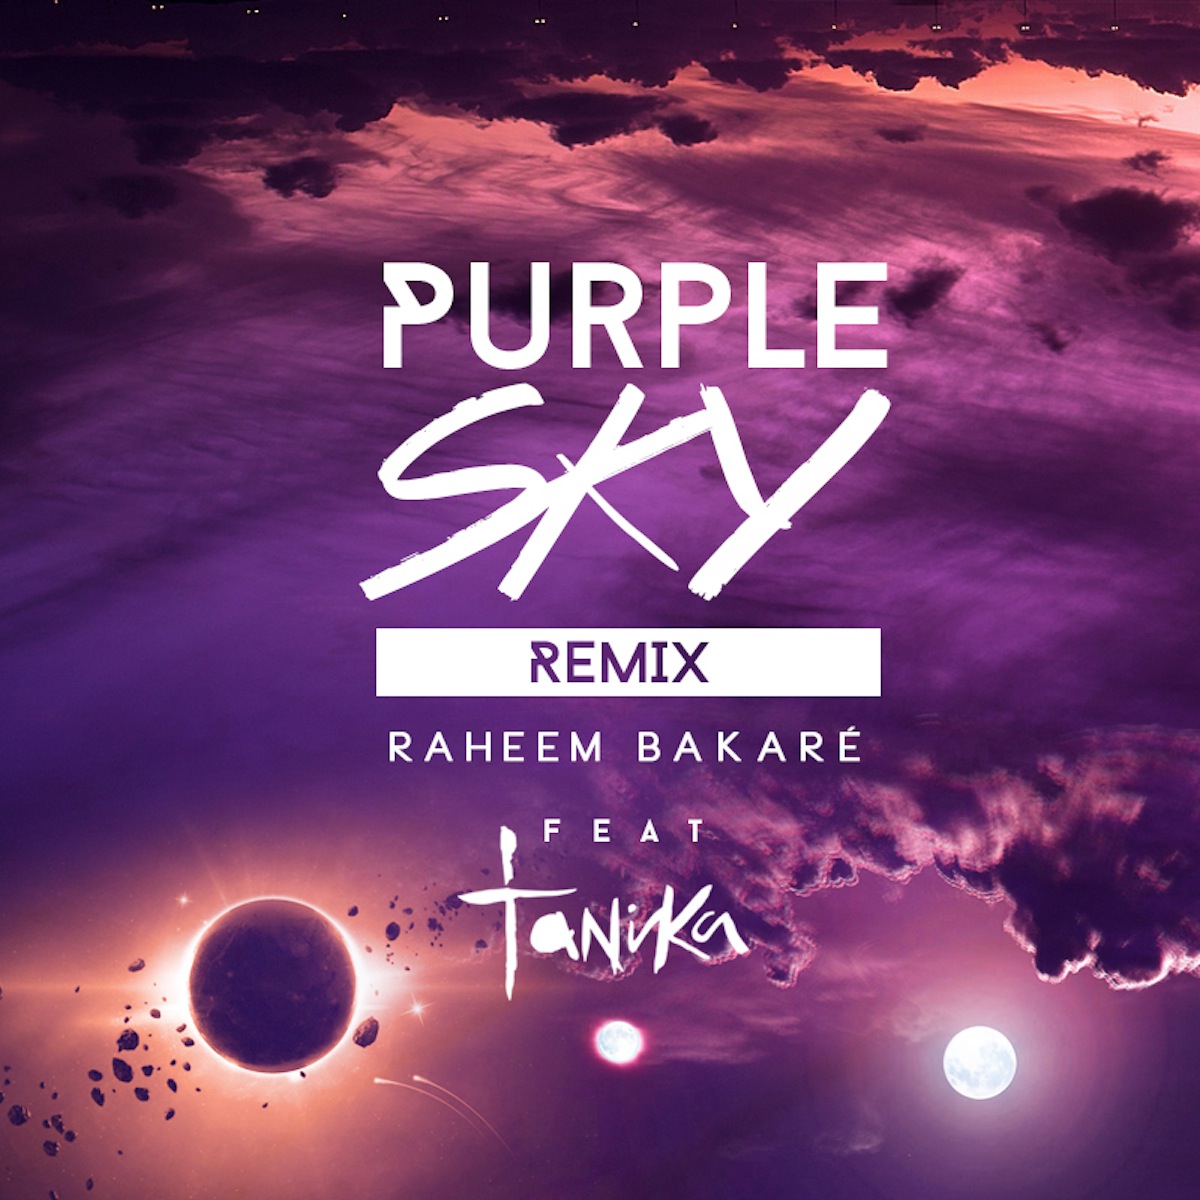 New remix. Обложка перпл Скай. Mayah Purple Sky обложка. Обложка перпл Скай трека. Woojin Purple Sky обложка.